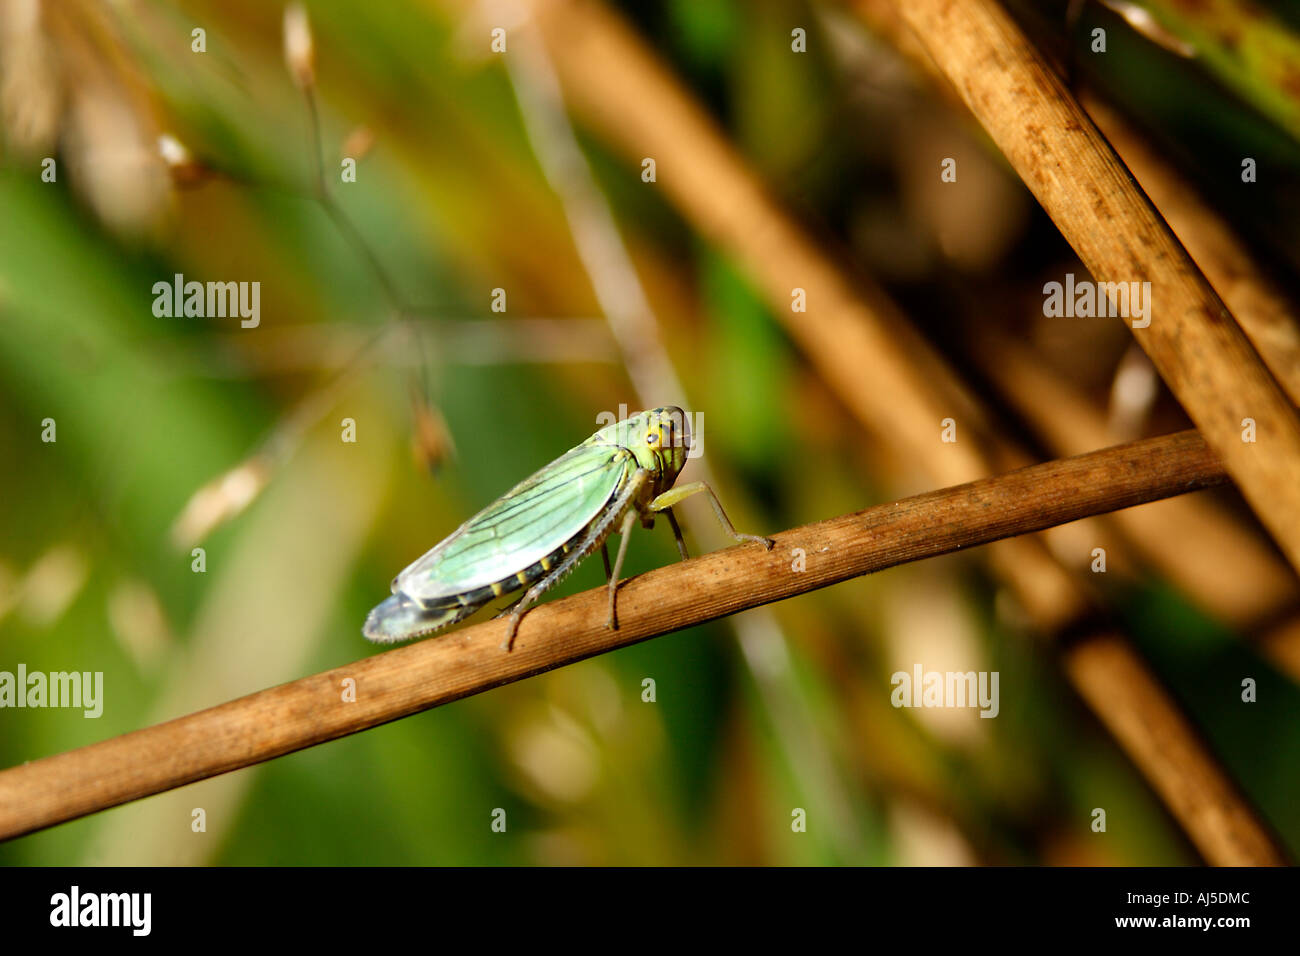 Grasshopper. Stock Photo